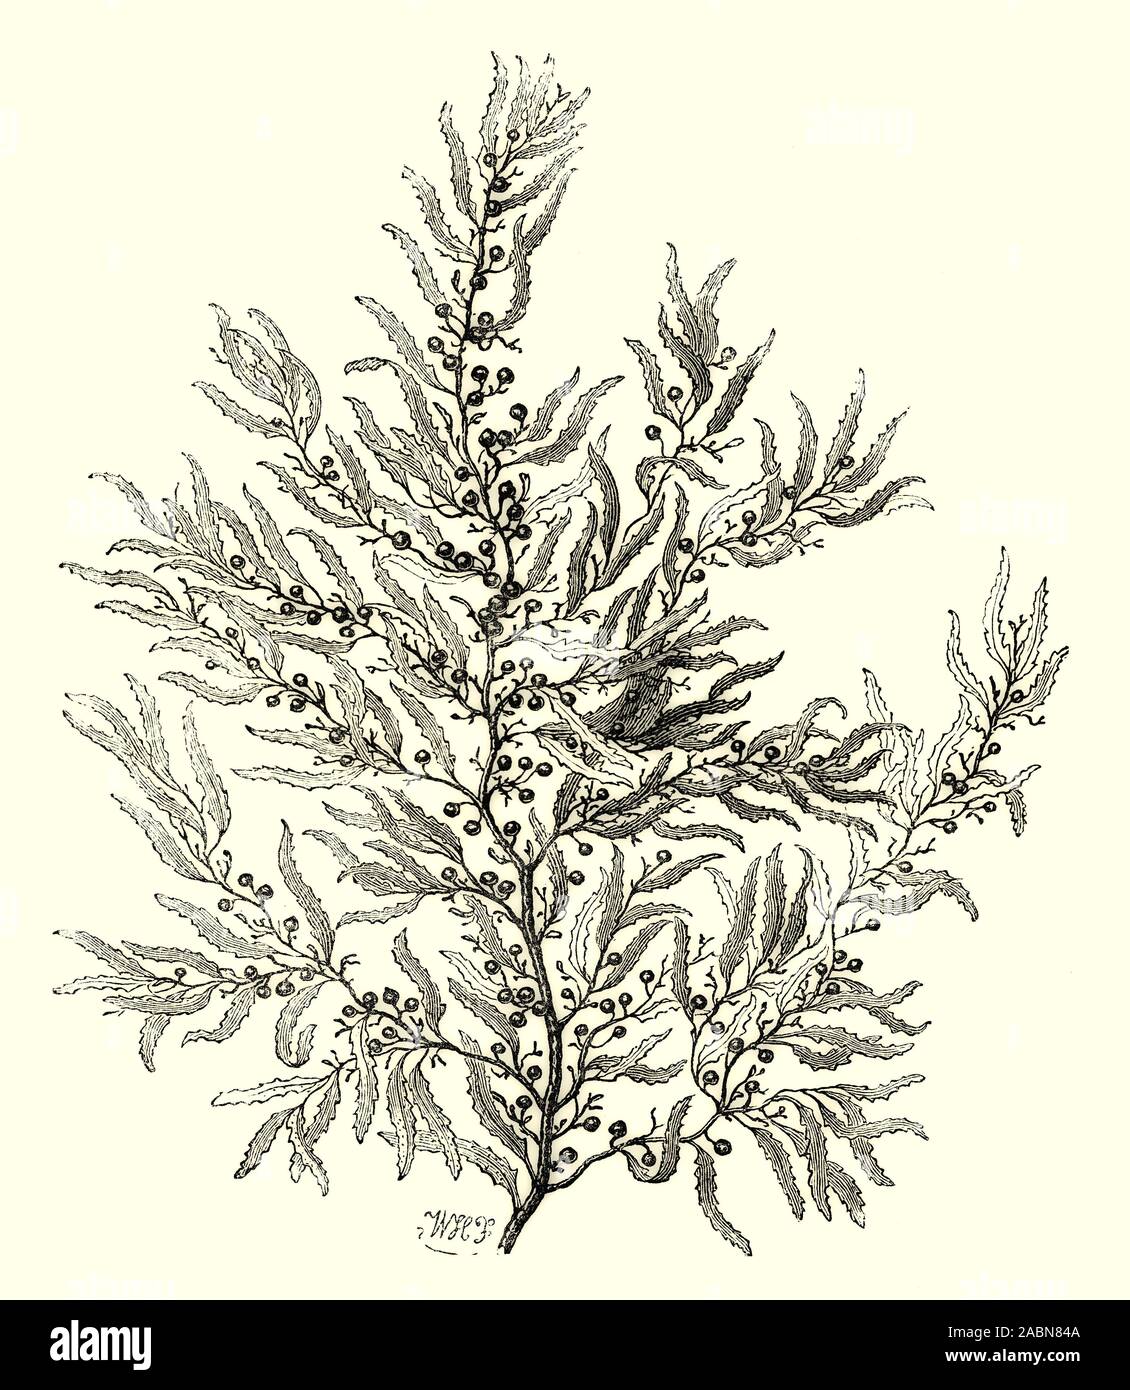 Fucus baccifera es un Sargassum es un género de Brown (clase Phaeophyceae) macroalgas (algas) en el orden Fucales, distribuidas en las zonas templadas y tropicales de los océanos del mundo, donde generalmente habitan en aguas poco profundas y arrecifes de coral, y el género es ampliamente conocida por su planctónicos (flotante) especie. El Océano Atlántico, el Mar de los Sargazos fue nombrado después de las algas, ya que alberga una gran cantidad de Sargassum. Foto de stock